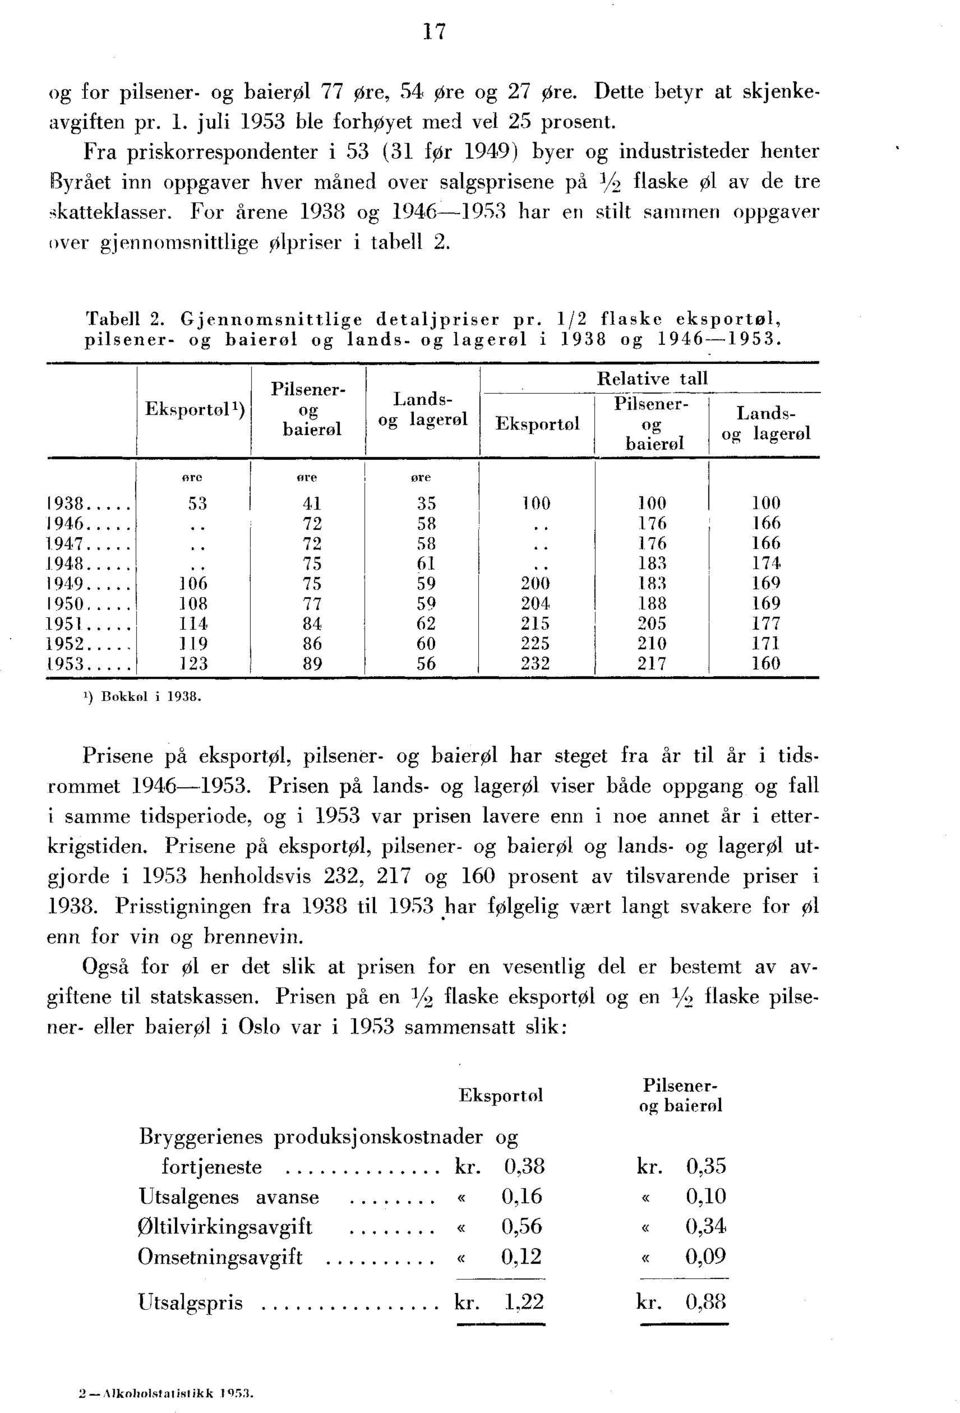 For årene 1938 og 1946-1953 har en stilt sammen oppgaver over gjennomsnittlige Ølpriser i tabell 2. Tabell 2. Gjennomsnittlige detaljpriser pr. 1/2 flaske eksportol, pilsener- og baierol og lands.